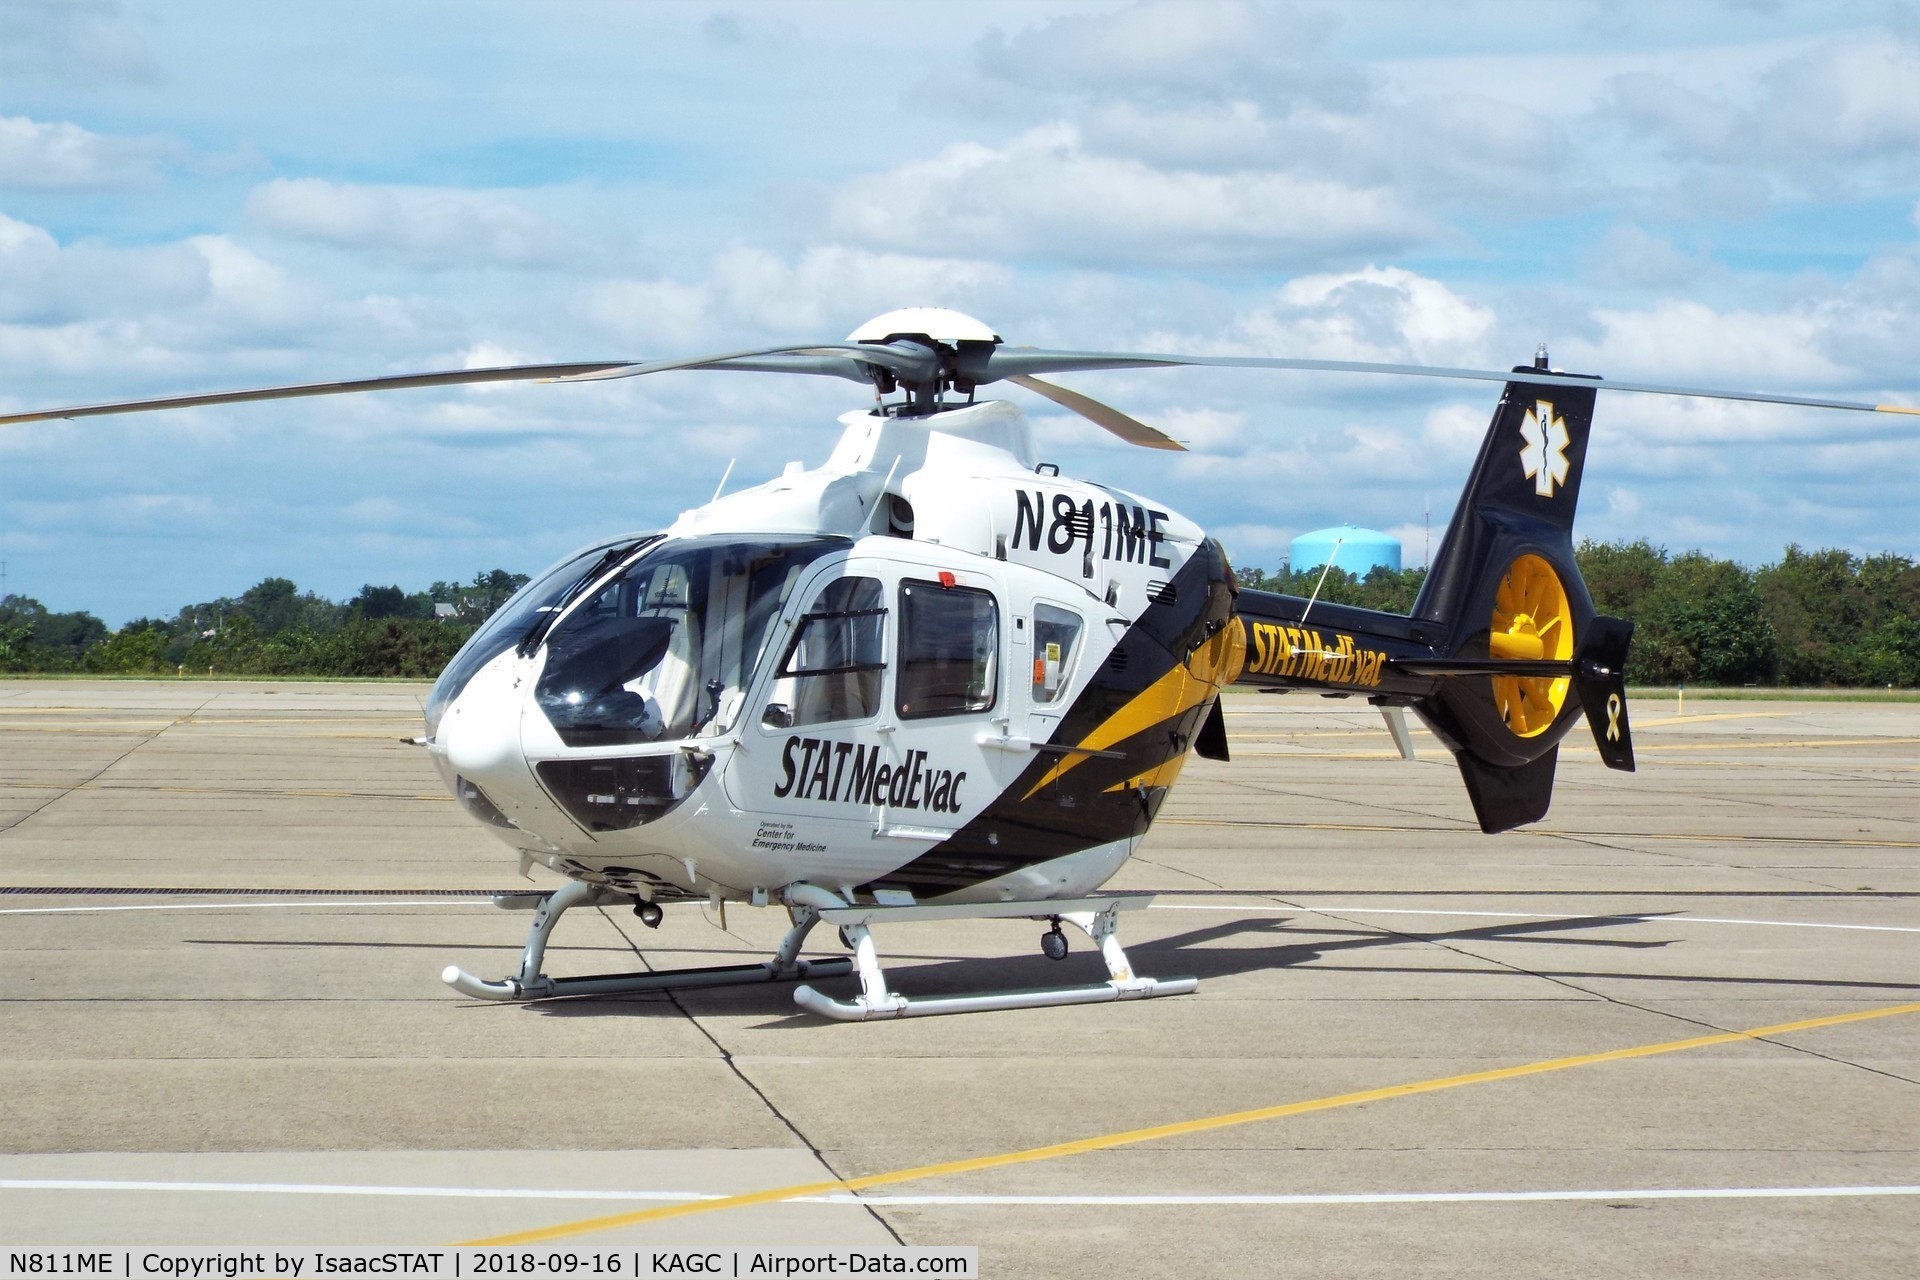 N811ME, 2015 Airbus Helicopters EC-135T-2+ C/N 1201, STAT MedEvac 6 getting some sun.